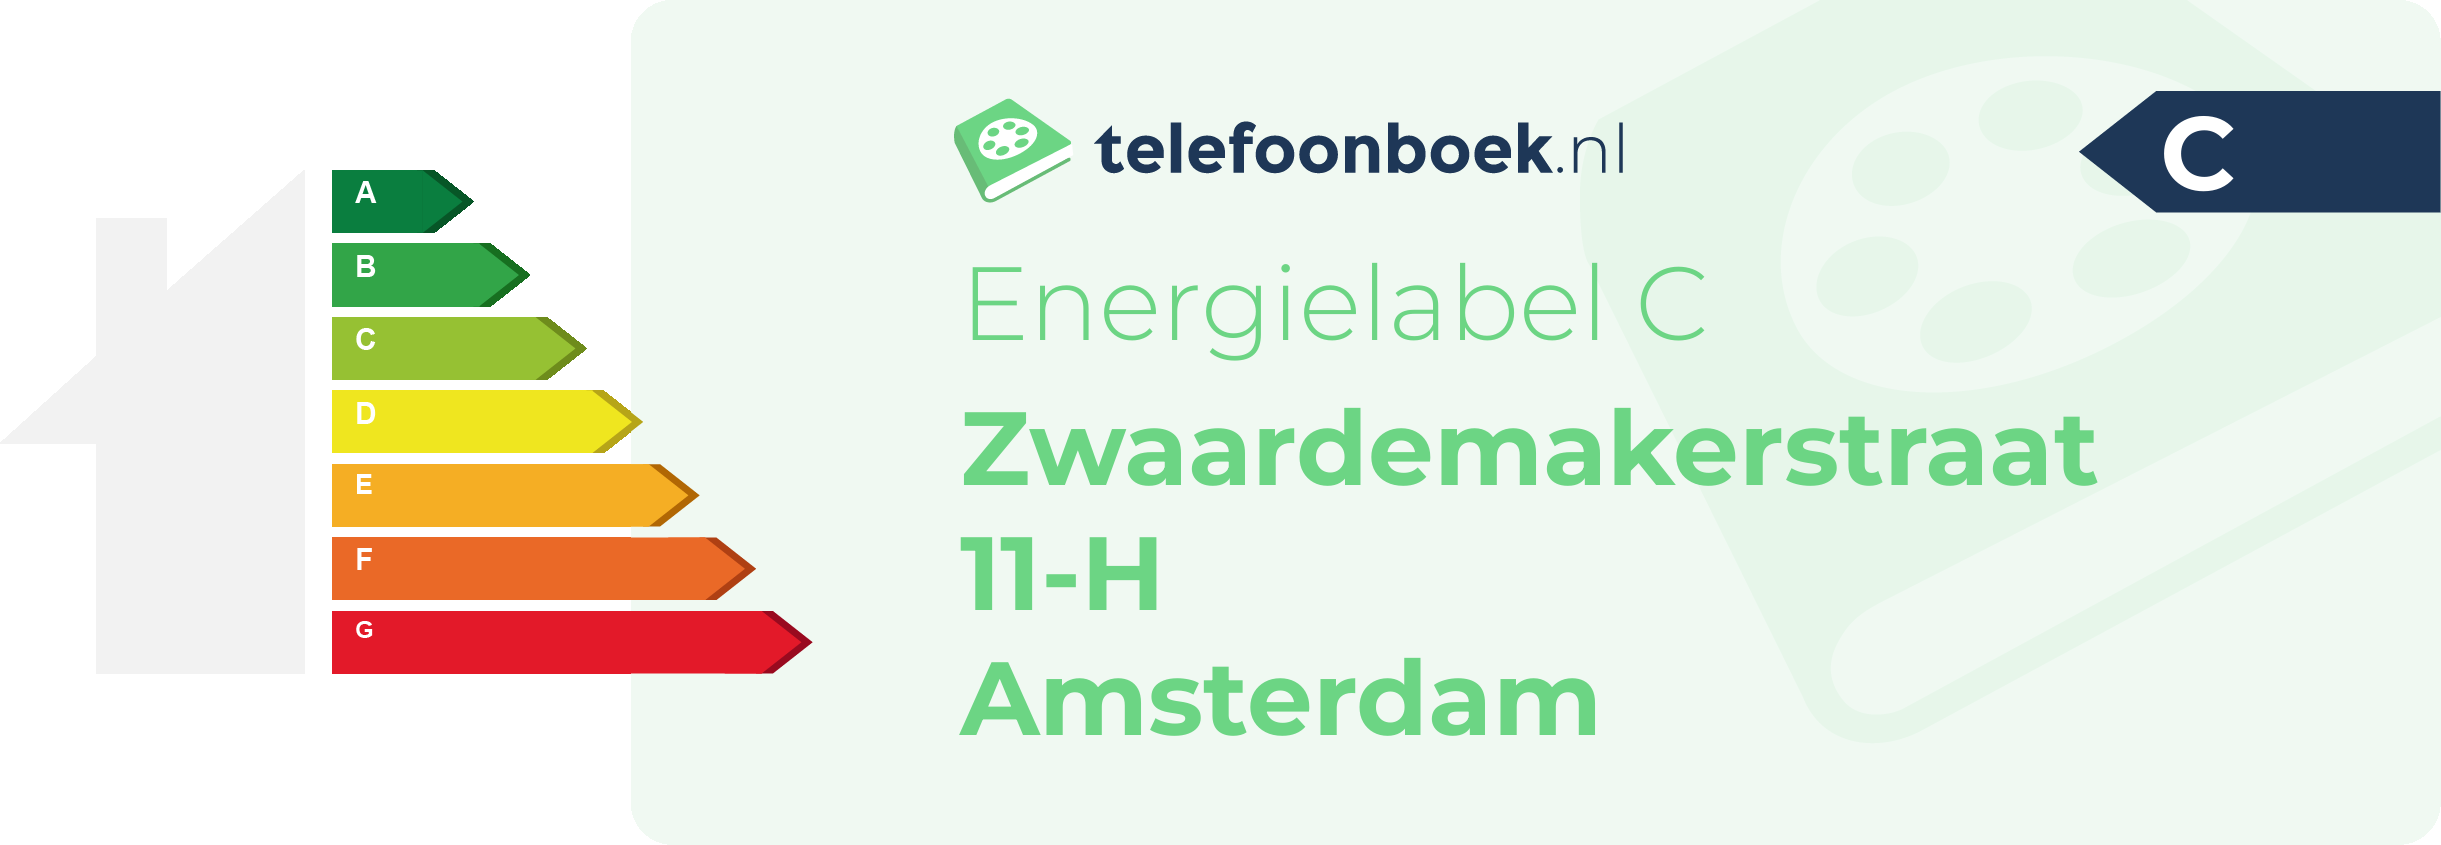 Energielabel Zwaardemakerstraat 11-H Amsterdam